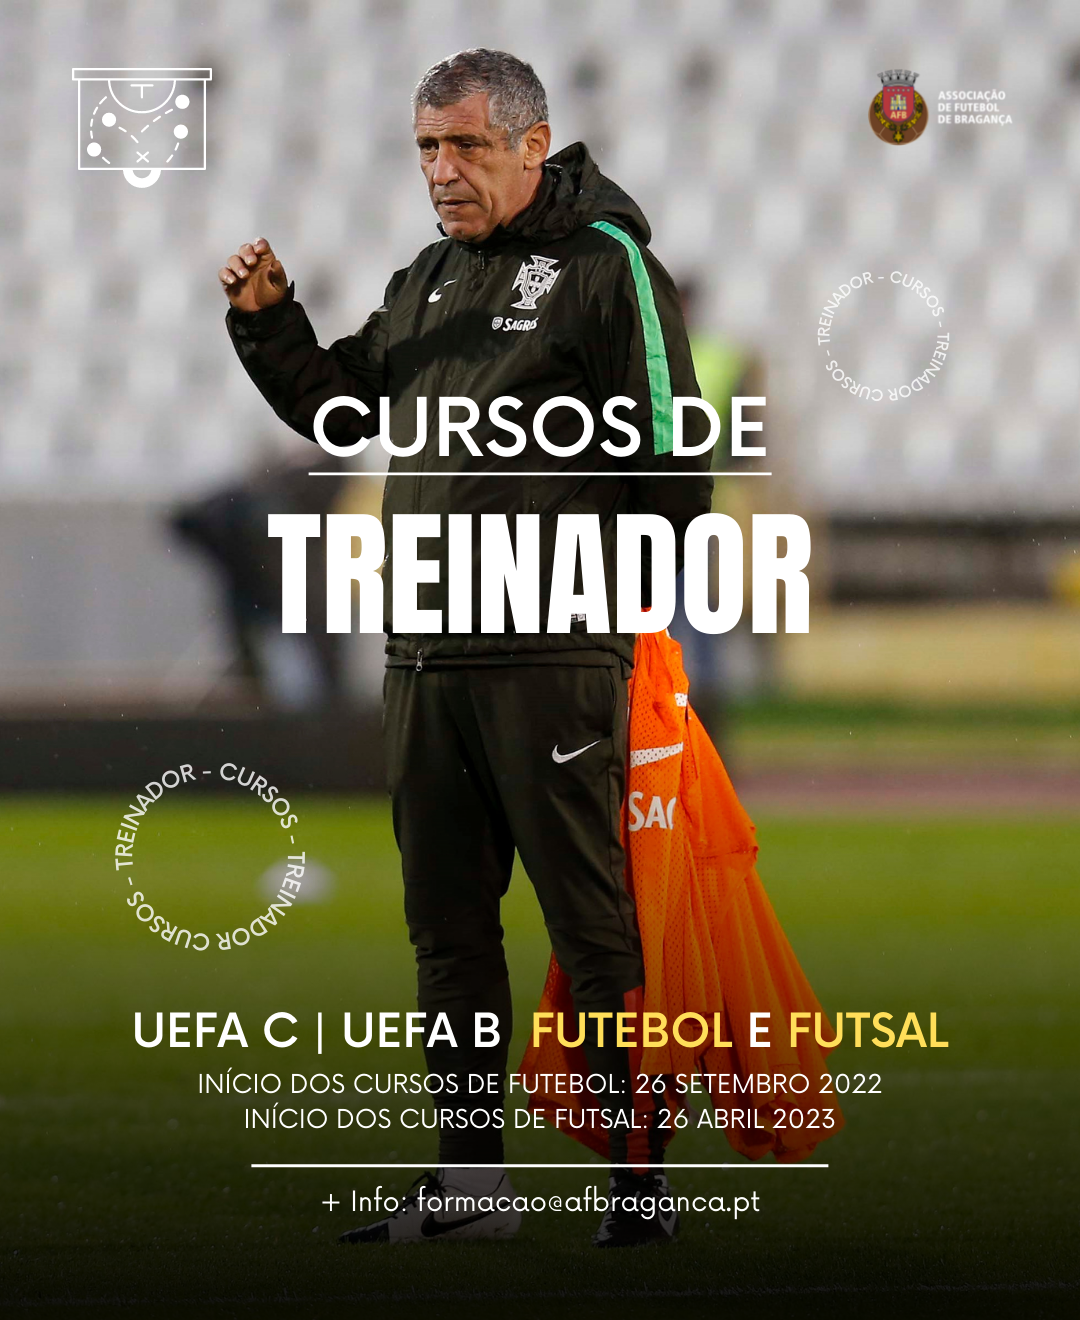 A RIGIDEZ ATUAL DA UEFA EM SEUS CURSOS DE TREINADOR - Footure - Futebol e  Cultura